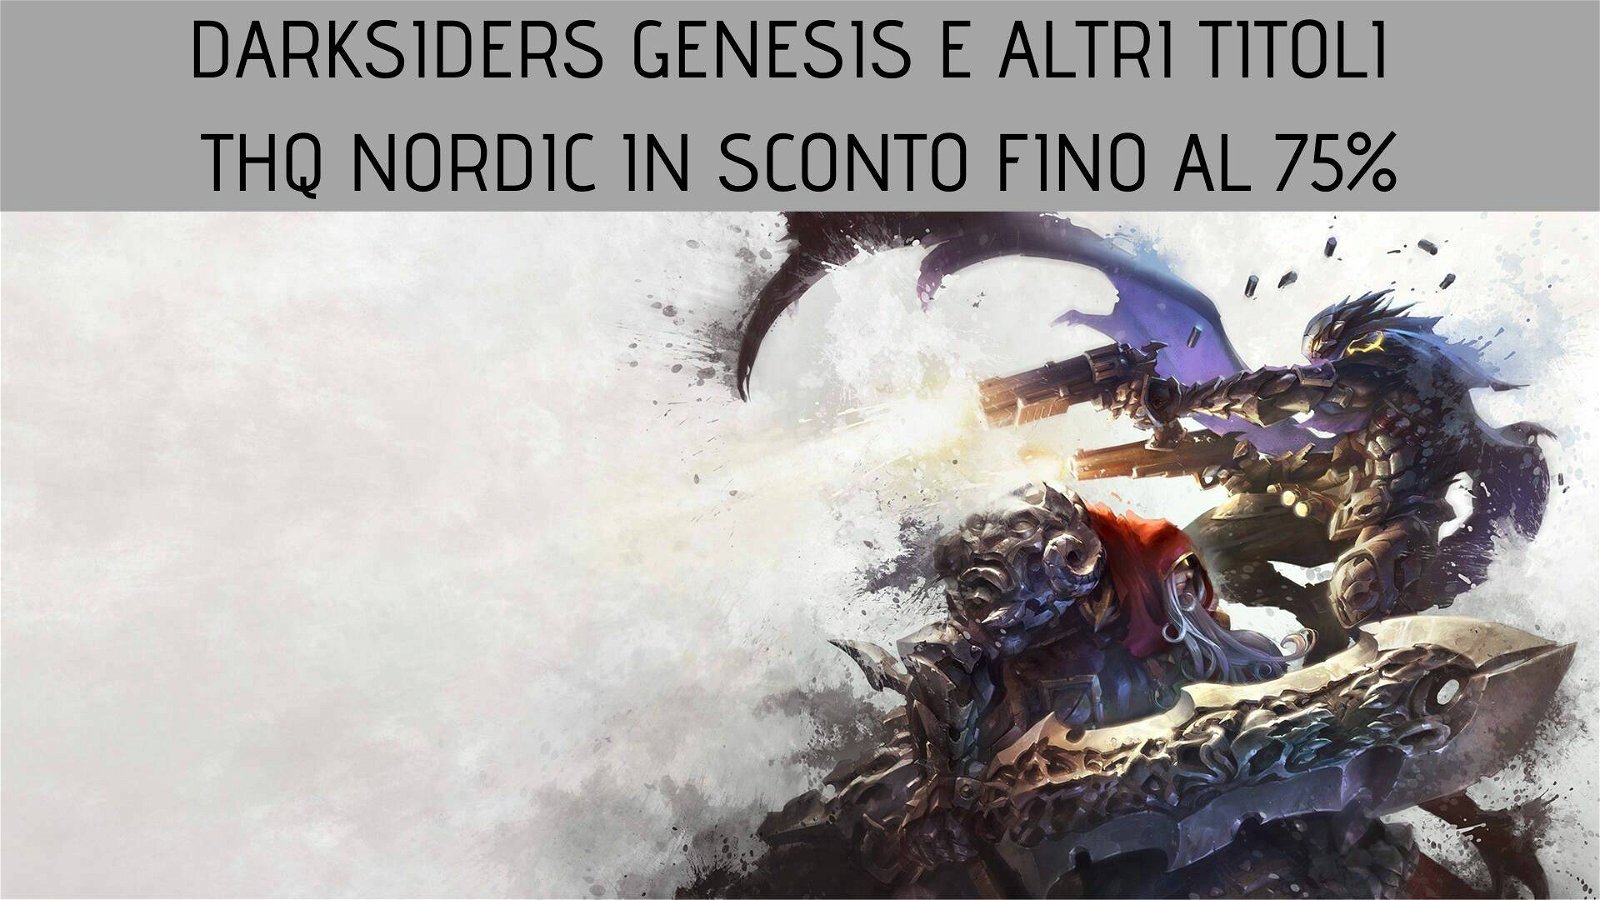 Immagine di Darksiders Genesis e altri titoli THQ Nordic in sconto fino al 75% su GamersGate!